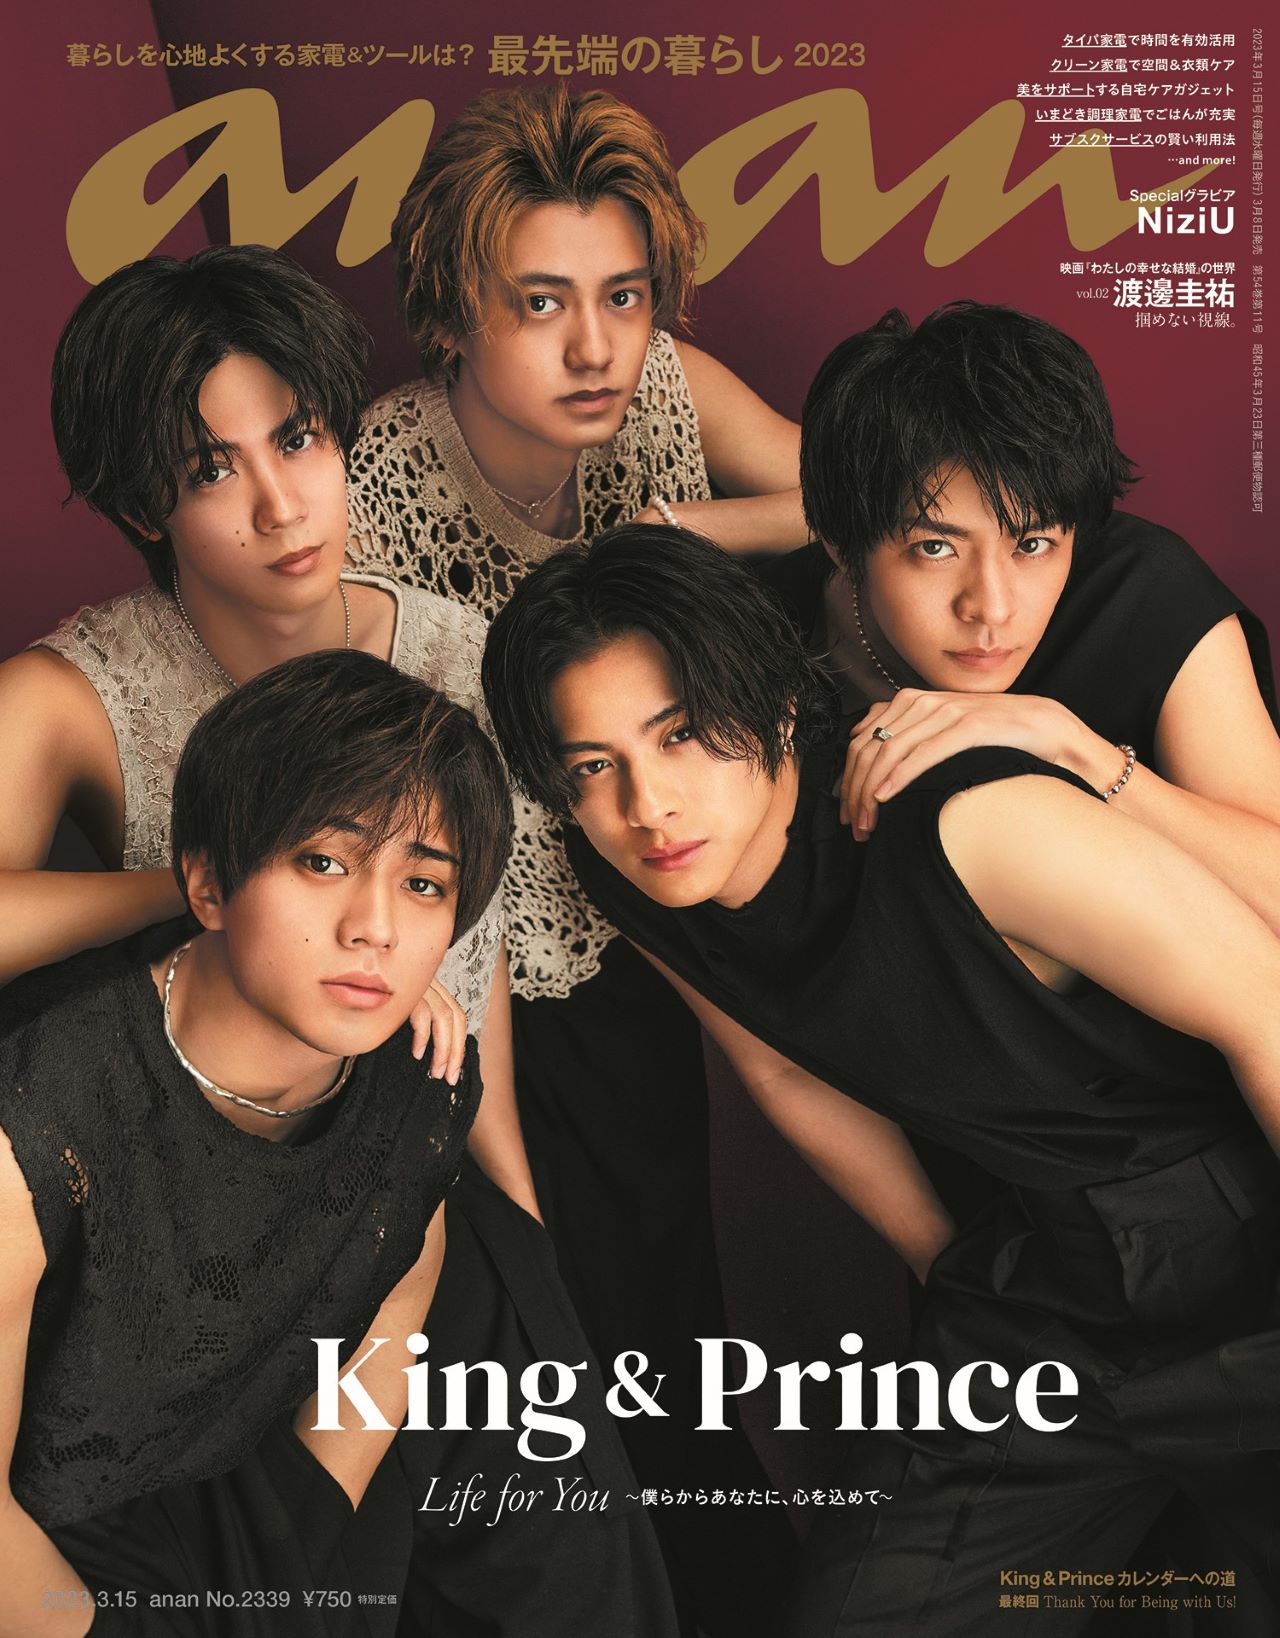 名作 King & キンプリ表紙雑誌＆Blu-ray Prince その他